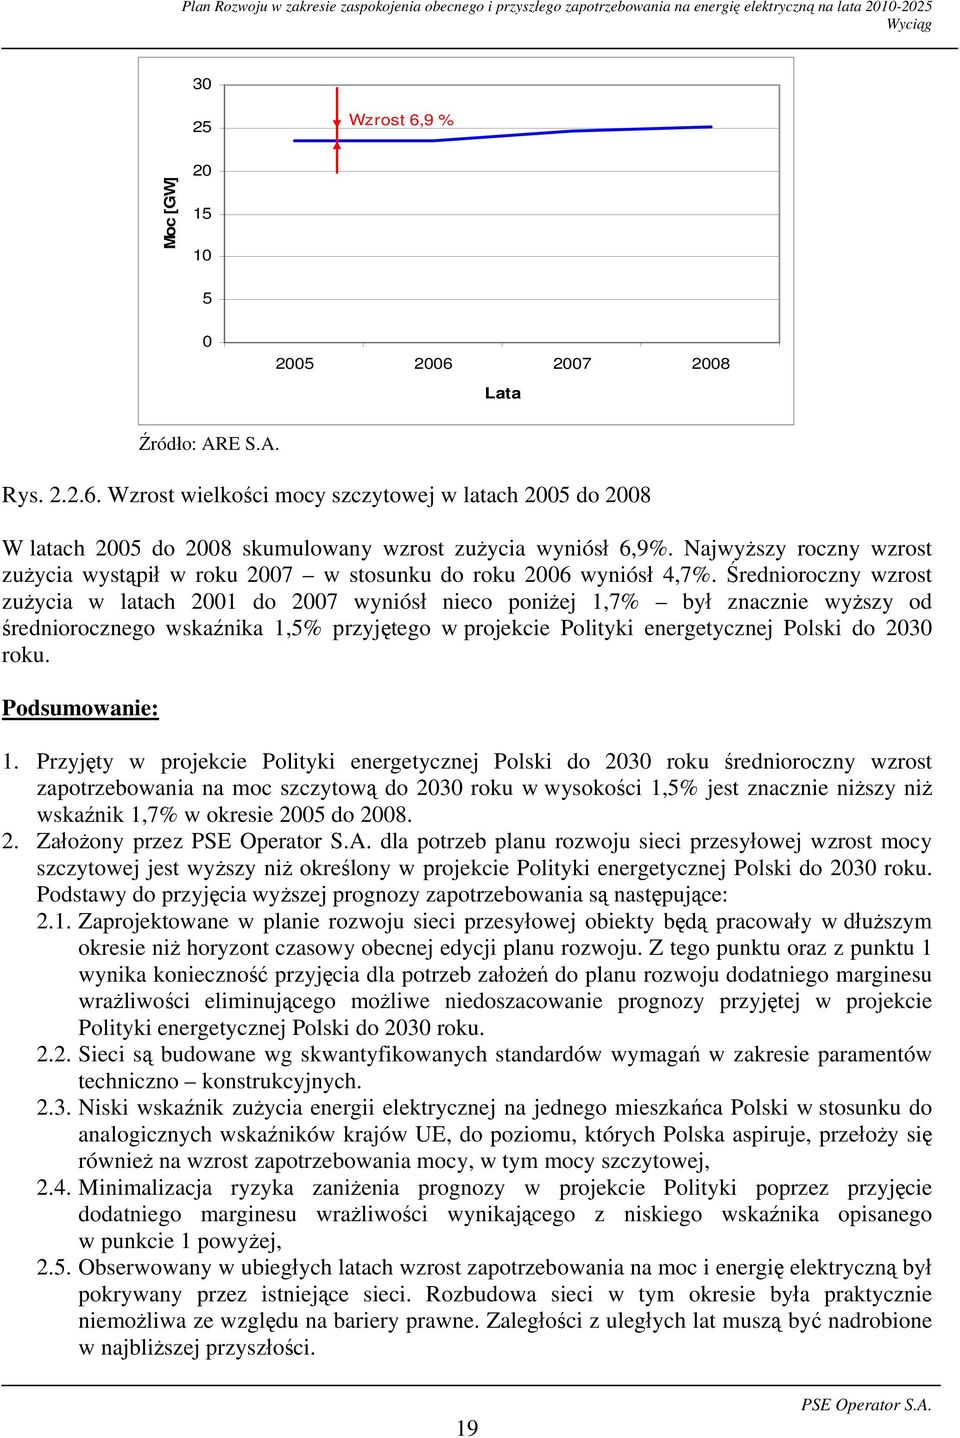 Średnioroczny wzrost zużycia w latach 2001 do 2007 wyniósł nieco poniżej 1,7% był znacznie wyższy od średniorocznego wskaźnika 1,5% przyjętego w projekcie Polityki energetycznej Polski do 2030 roku.